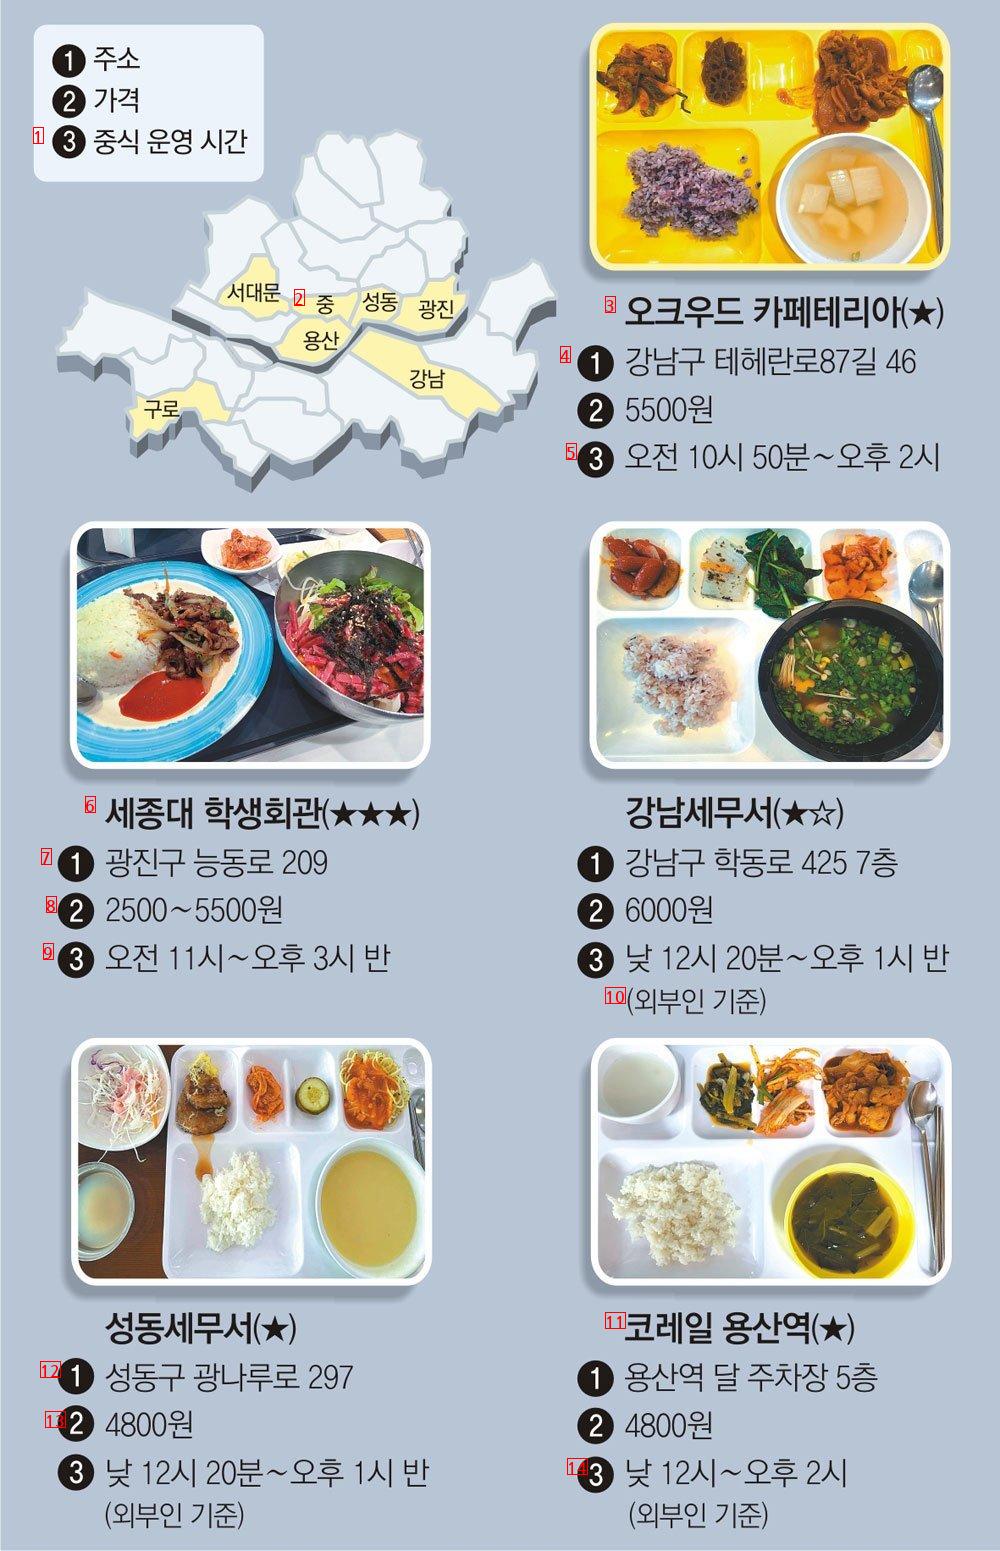 가성비 쩐다는 서울 구내식당 10곳